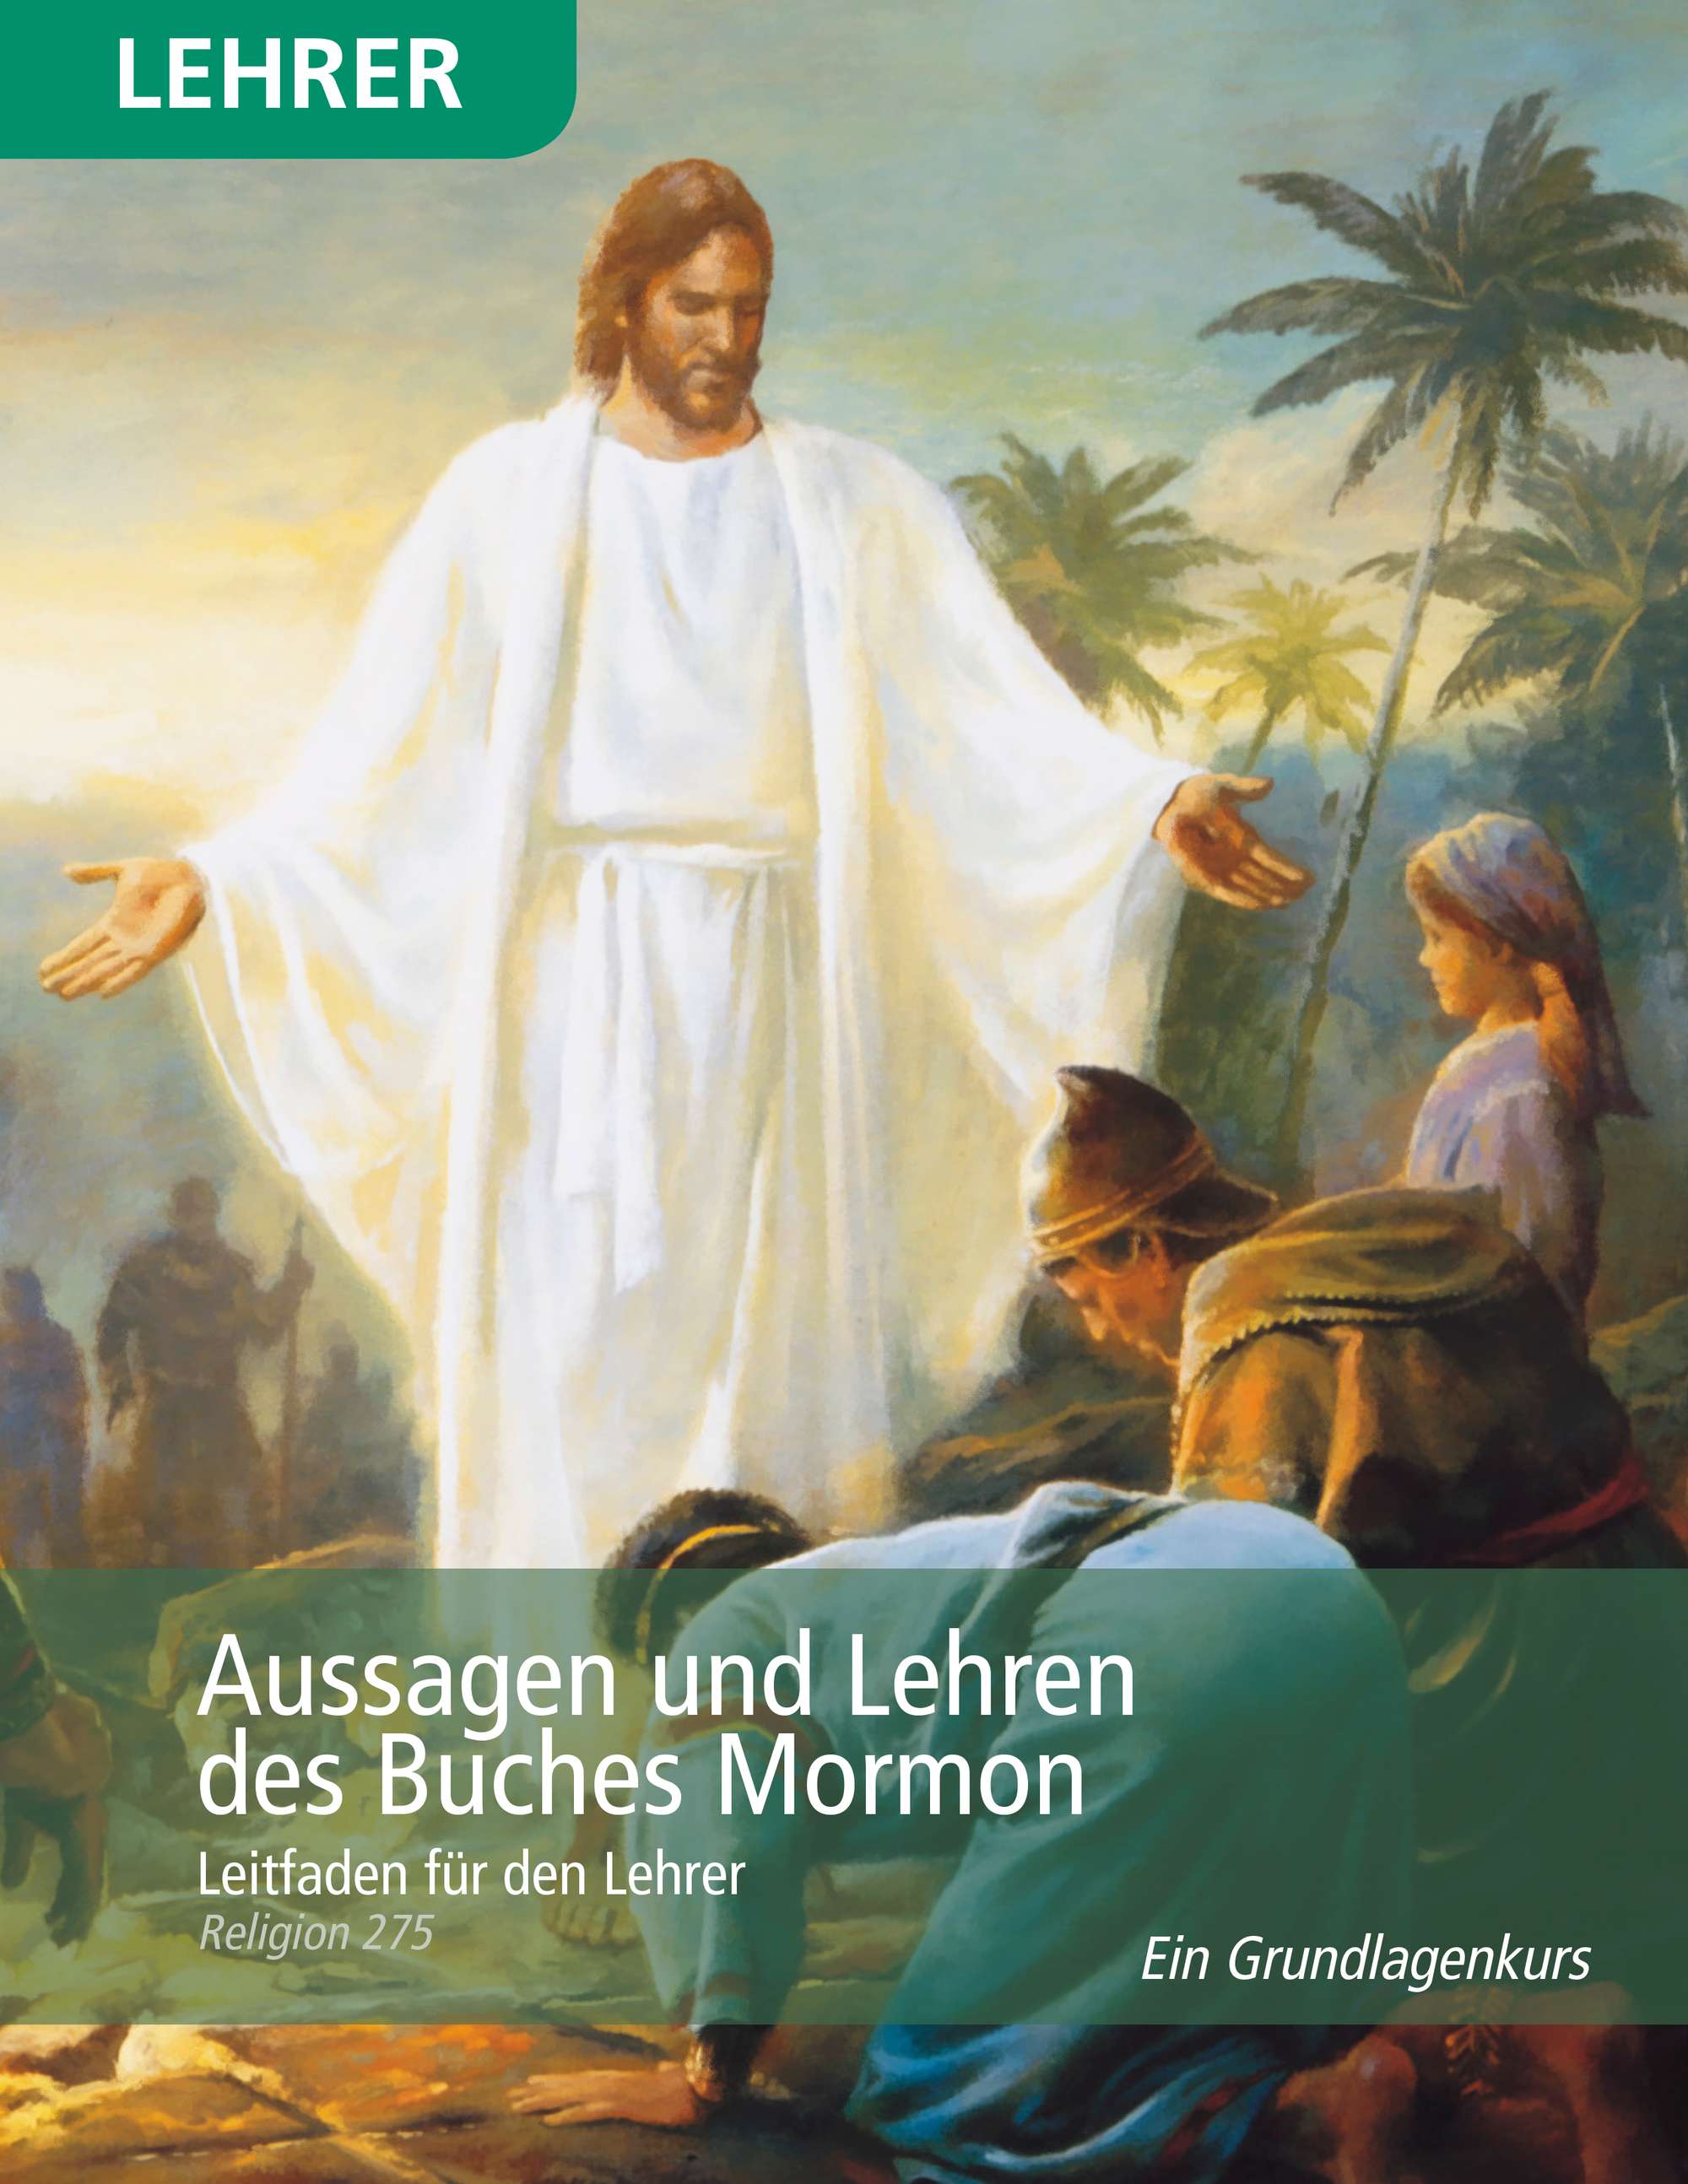 Aussagen und Lehren des Buches Mormon – Leitfaden für den Lehrer (Religion 275)